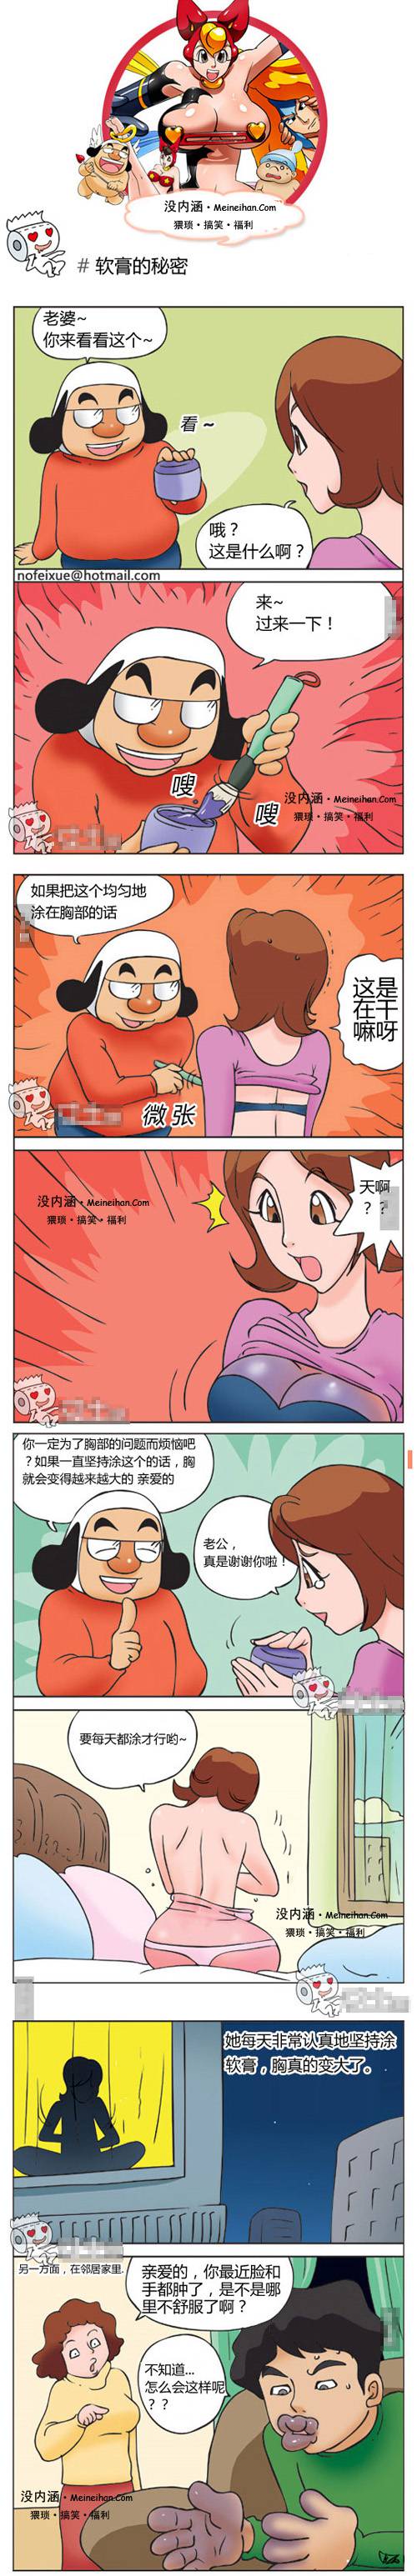 邪恶漫画爆笑囧图第124刊：冷战